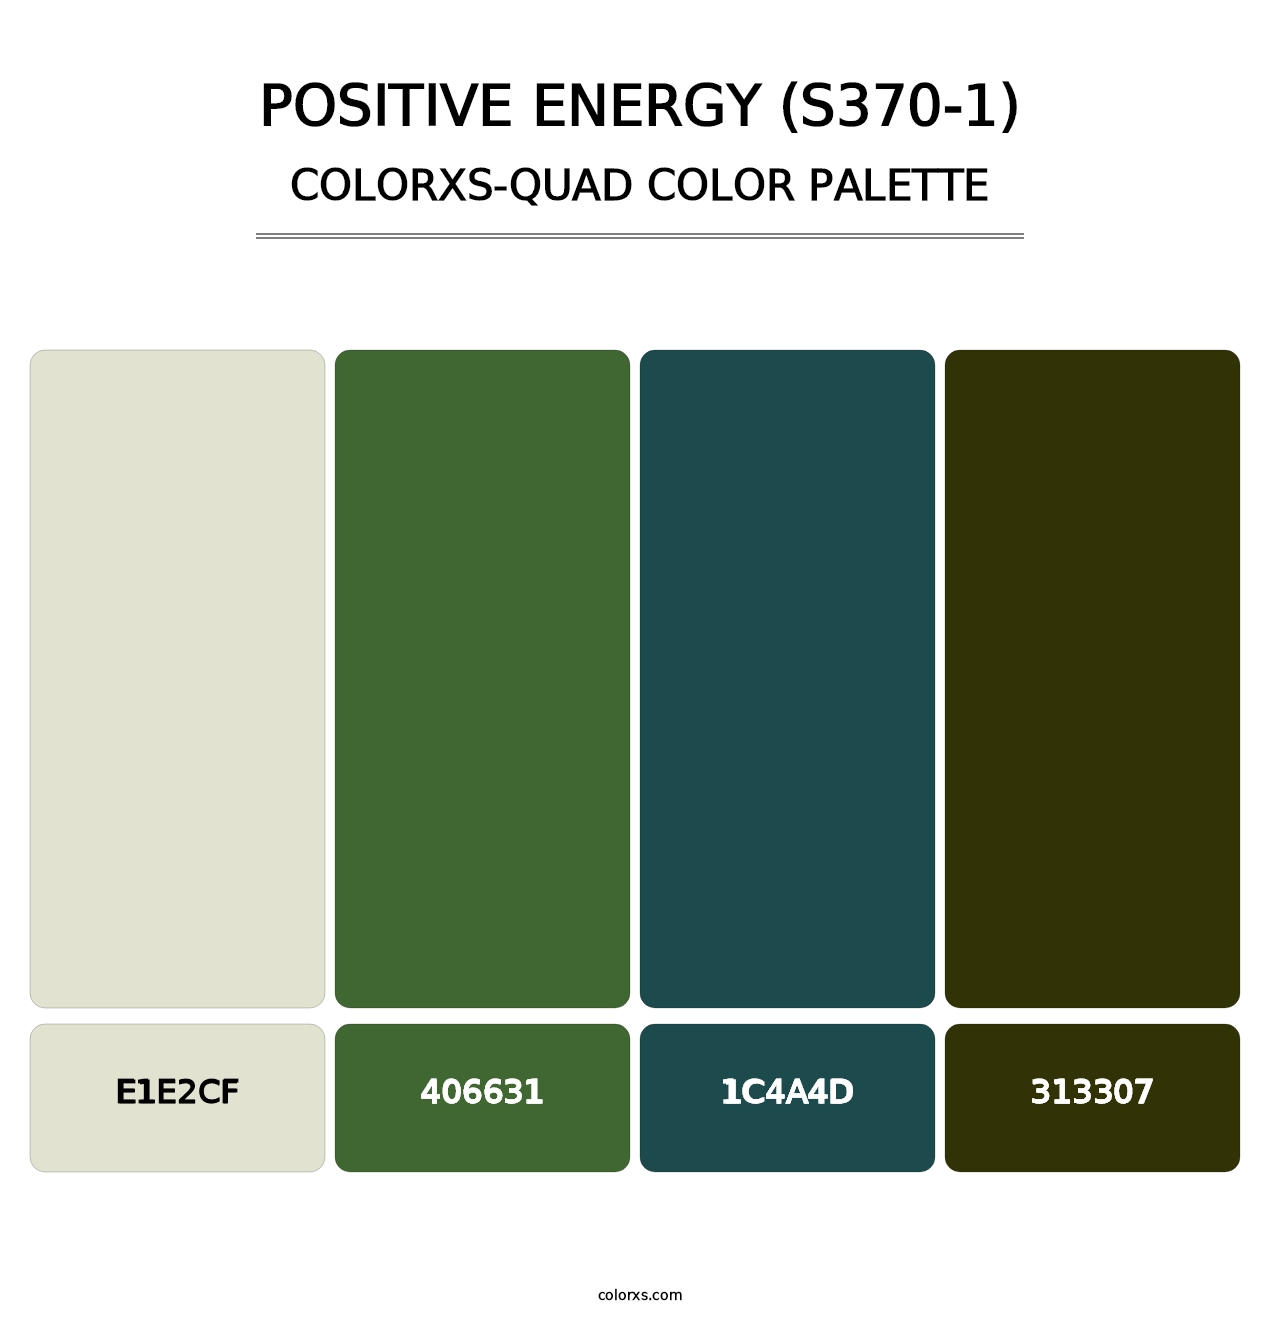 Positive Energy (S370-1) - Colorxs Quad Palette